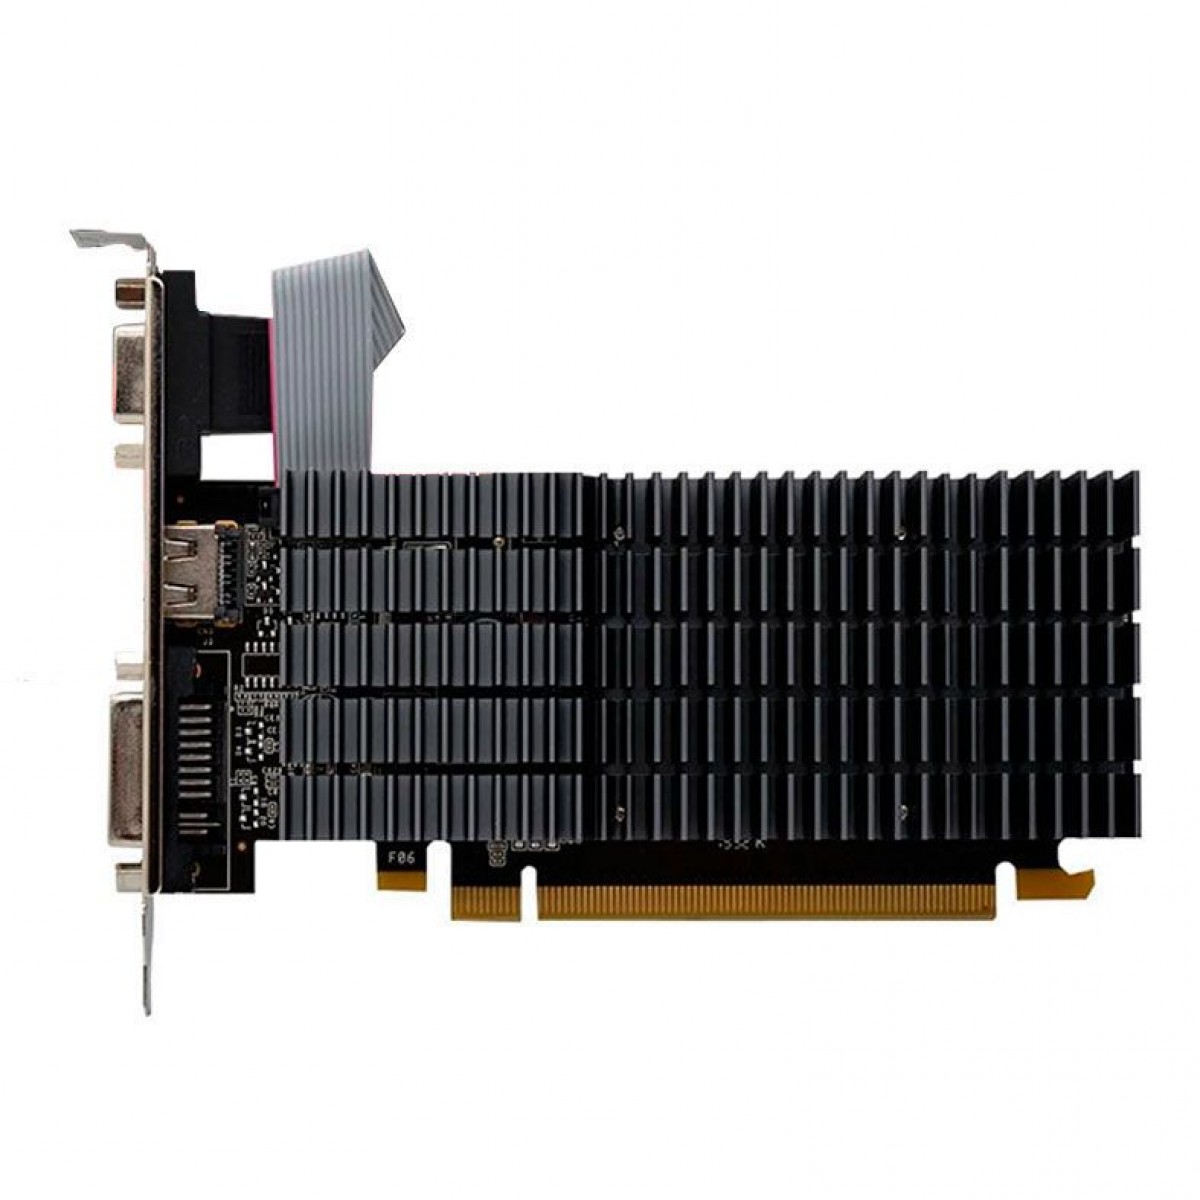 Placa de Vídeo AFox Radeon R5 220, 2GB, DDR3, 64bit, AFR5220-2048D3L9-V2